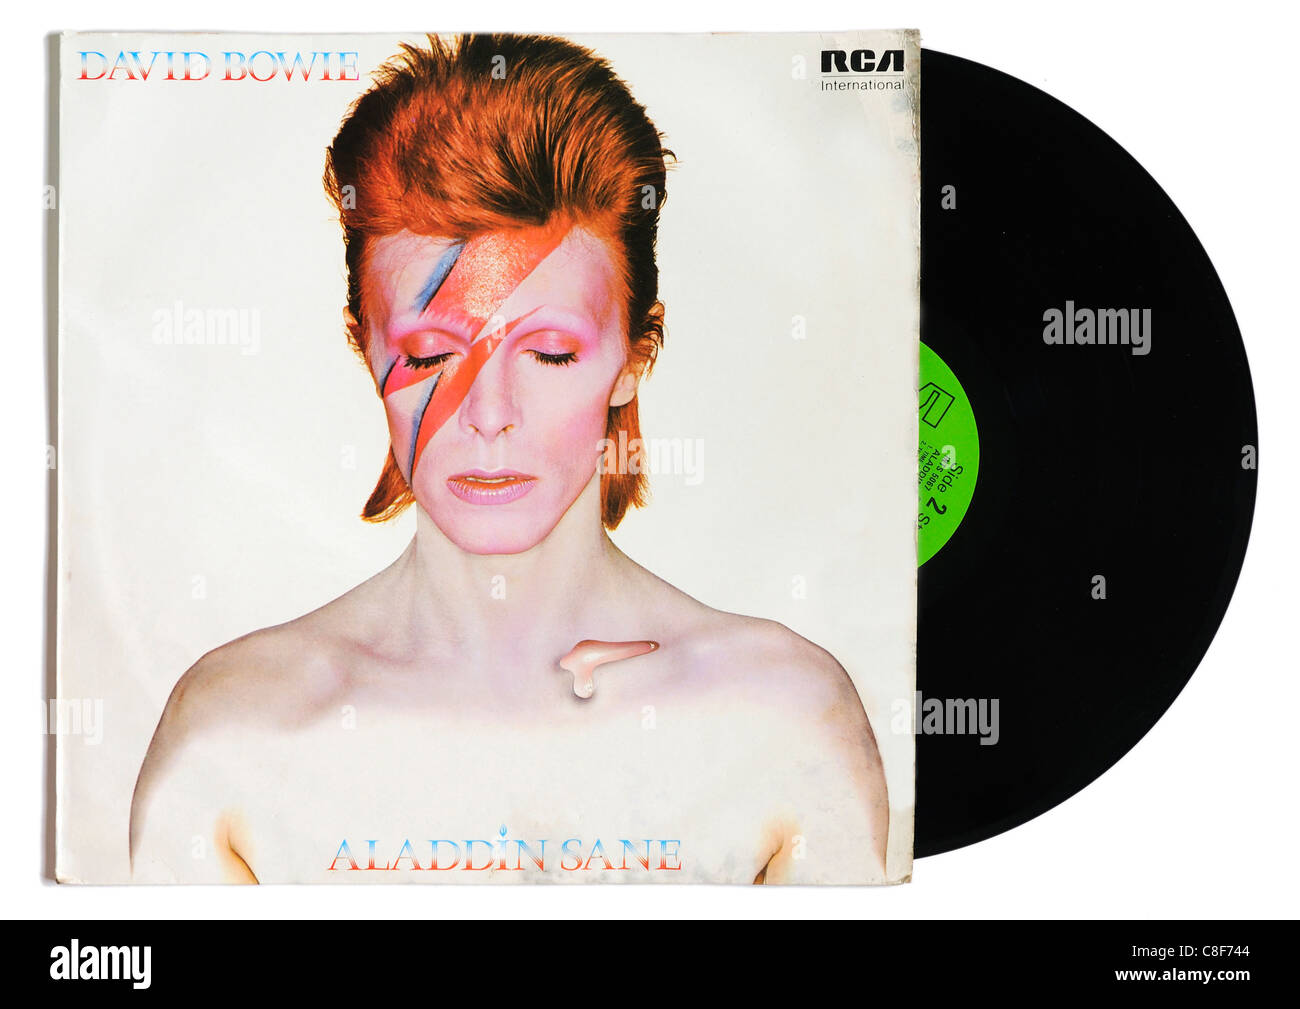 David Bowie Aladdin Sane album Stockfotografie - Alamy